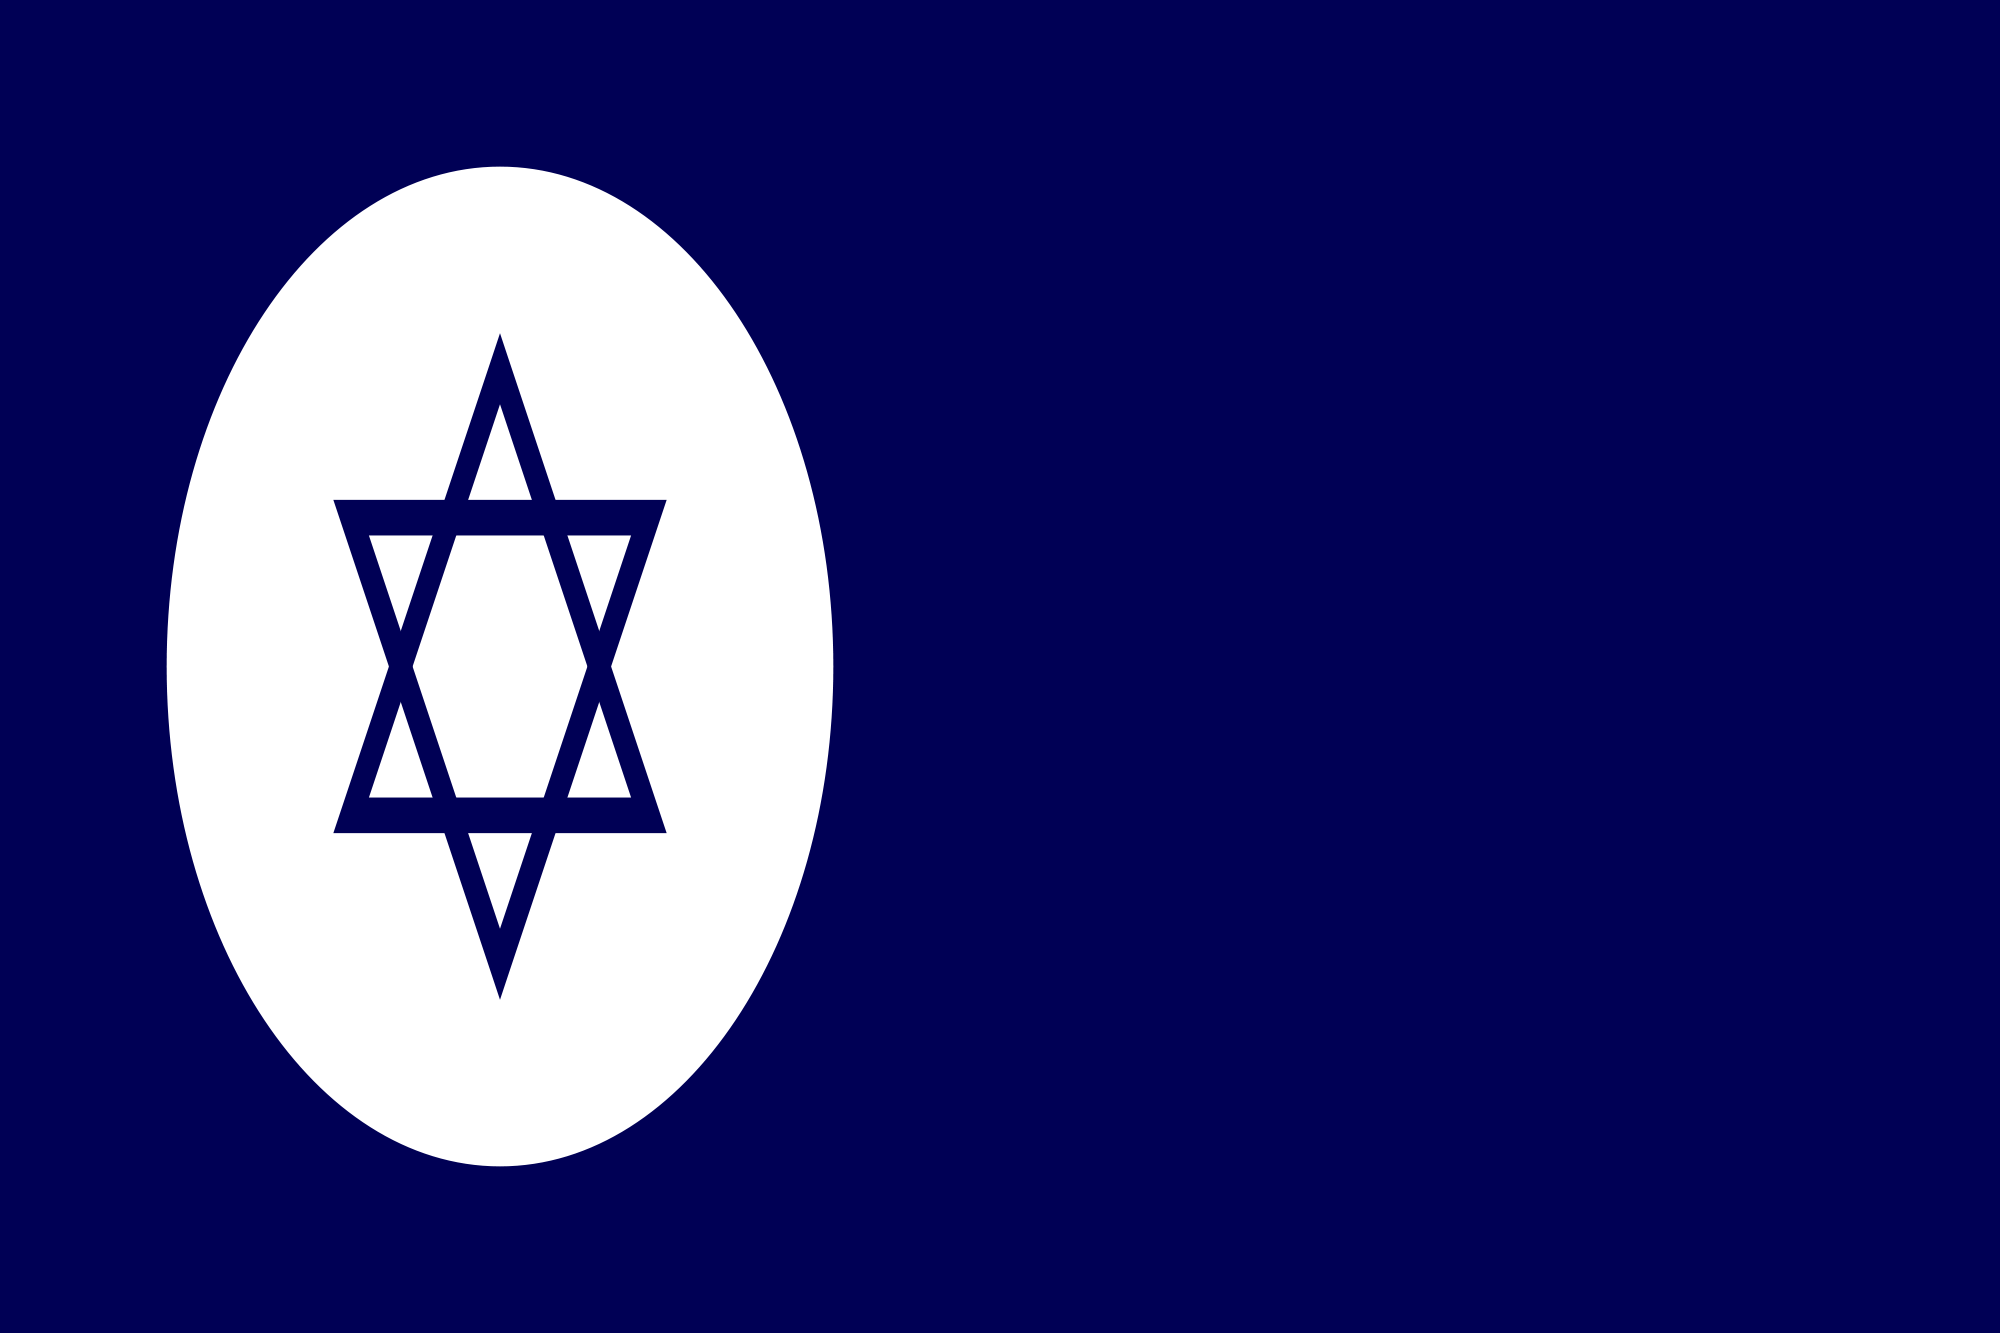 Israel (Civil ensign)